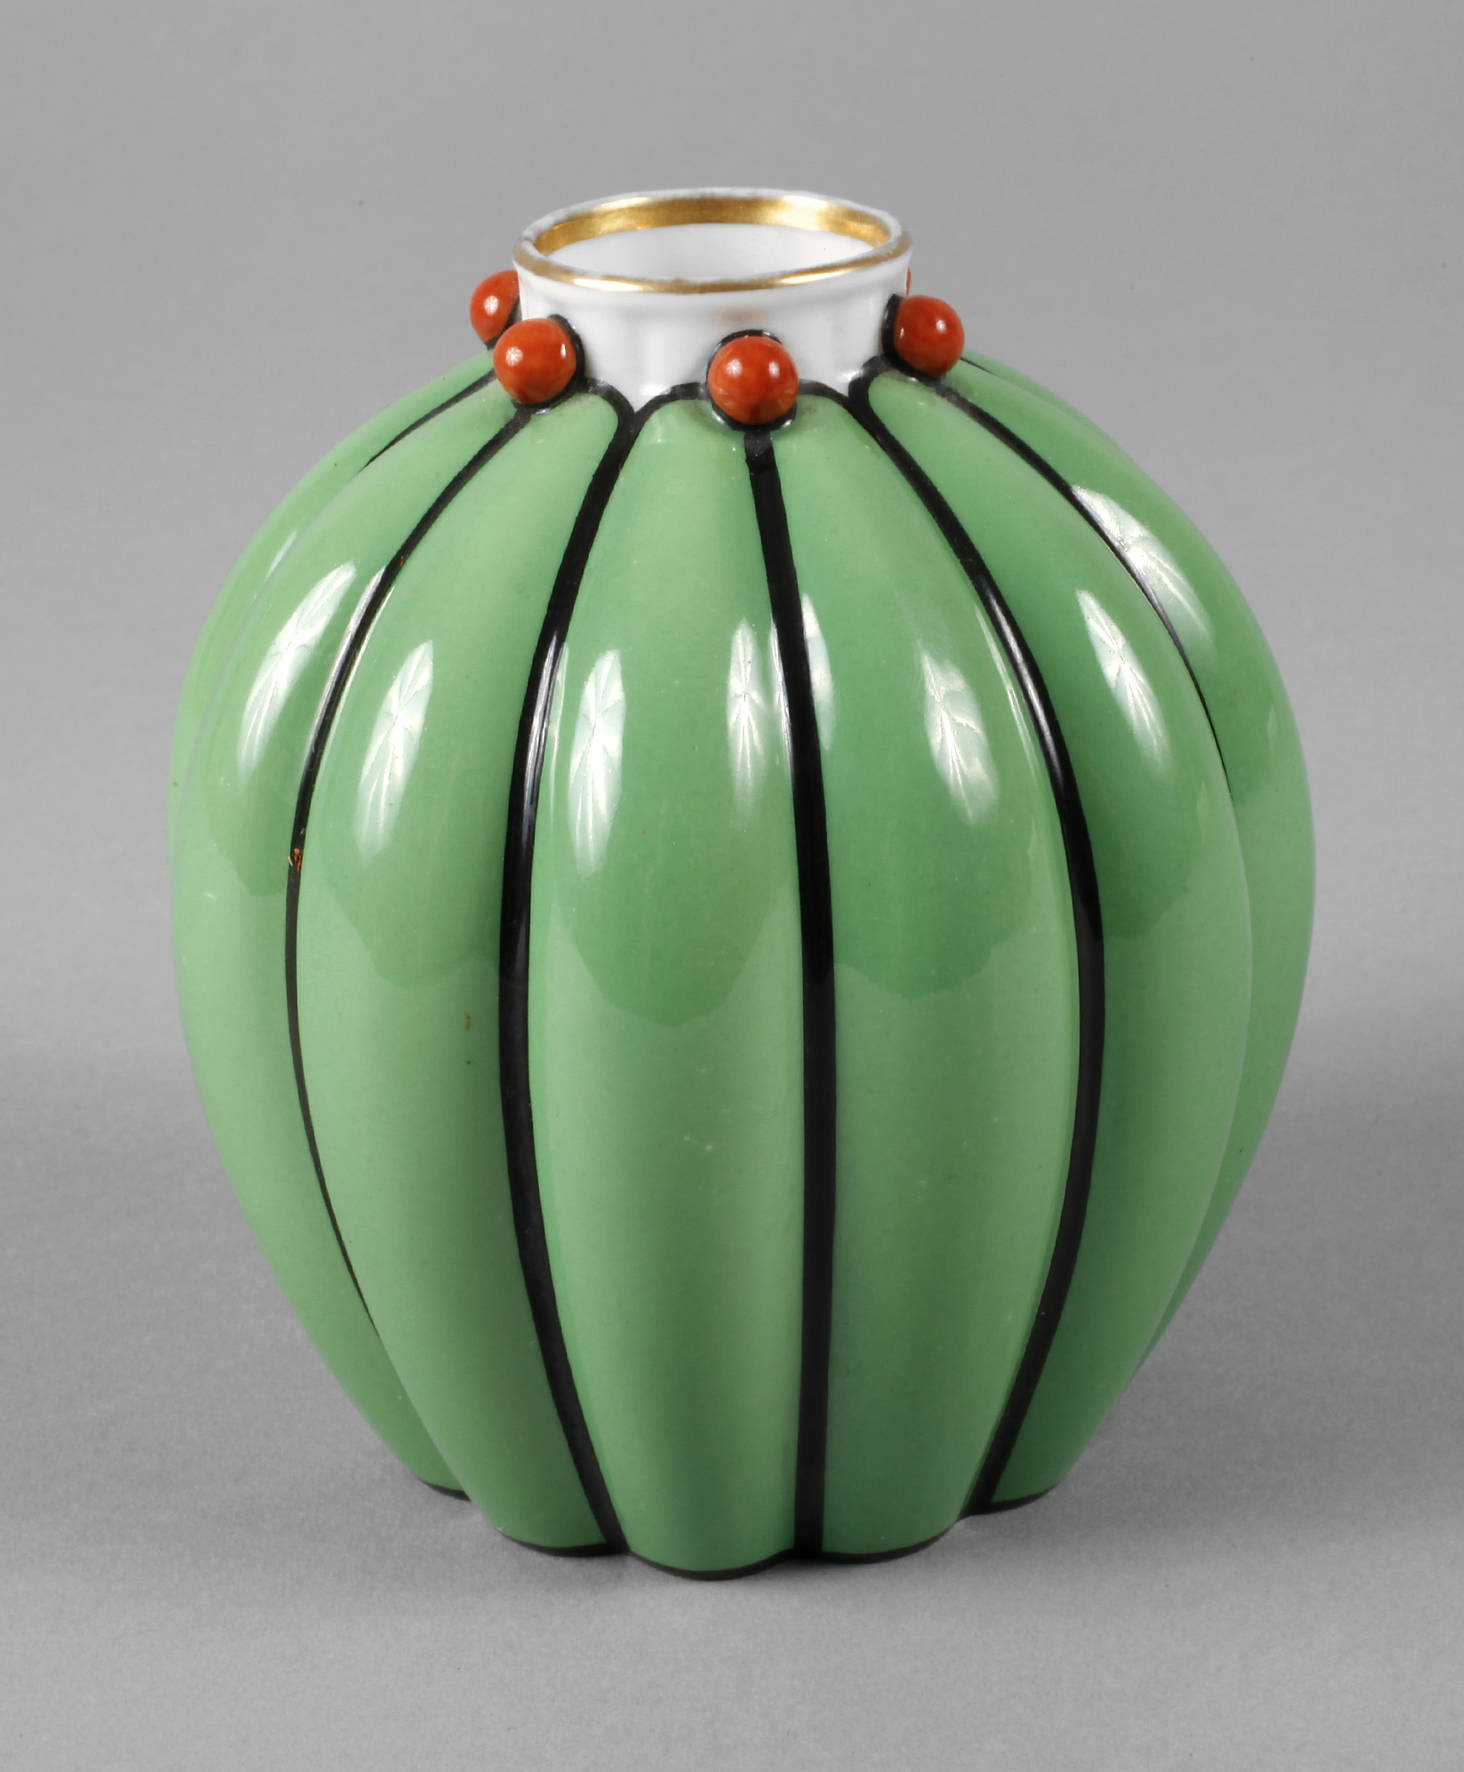 Zeh, Scherzer & Co. ”Melonen-Vase”